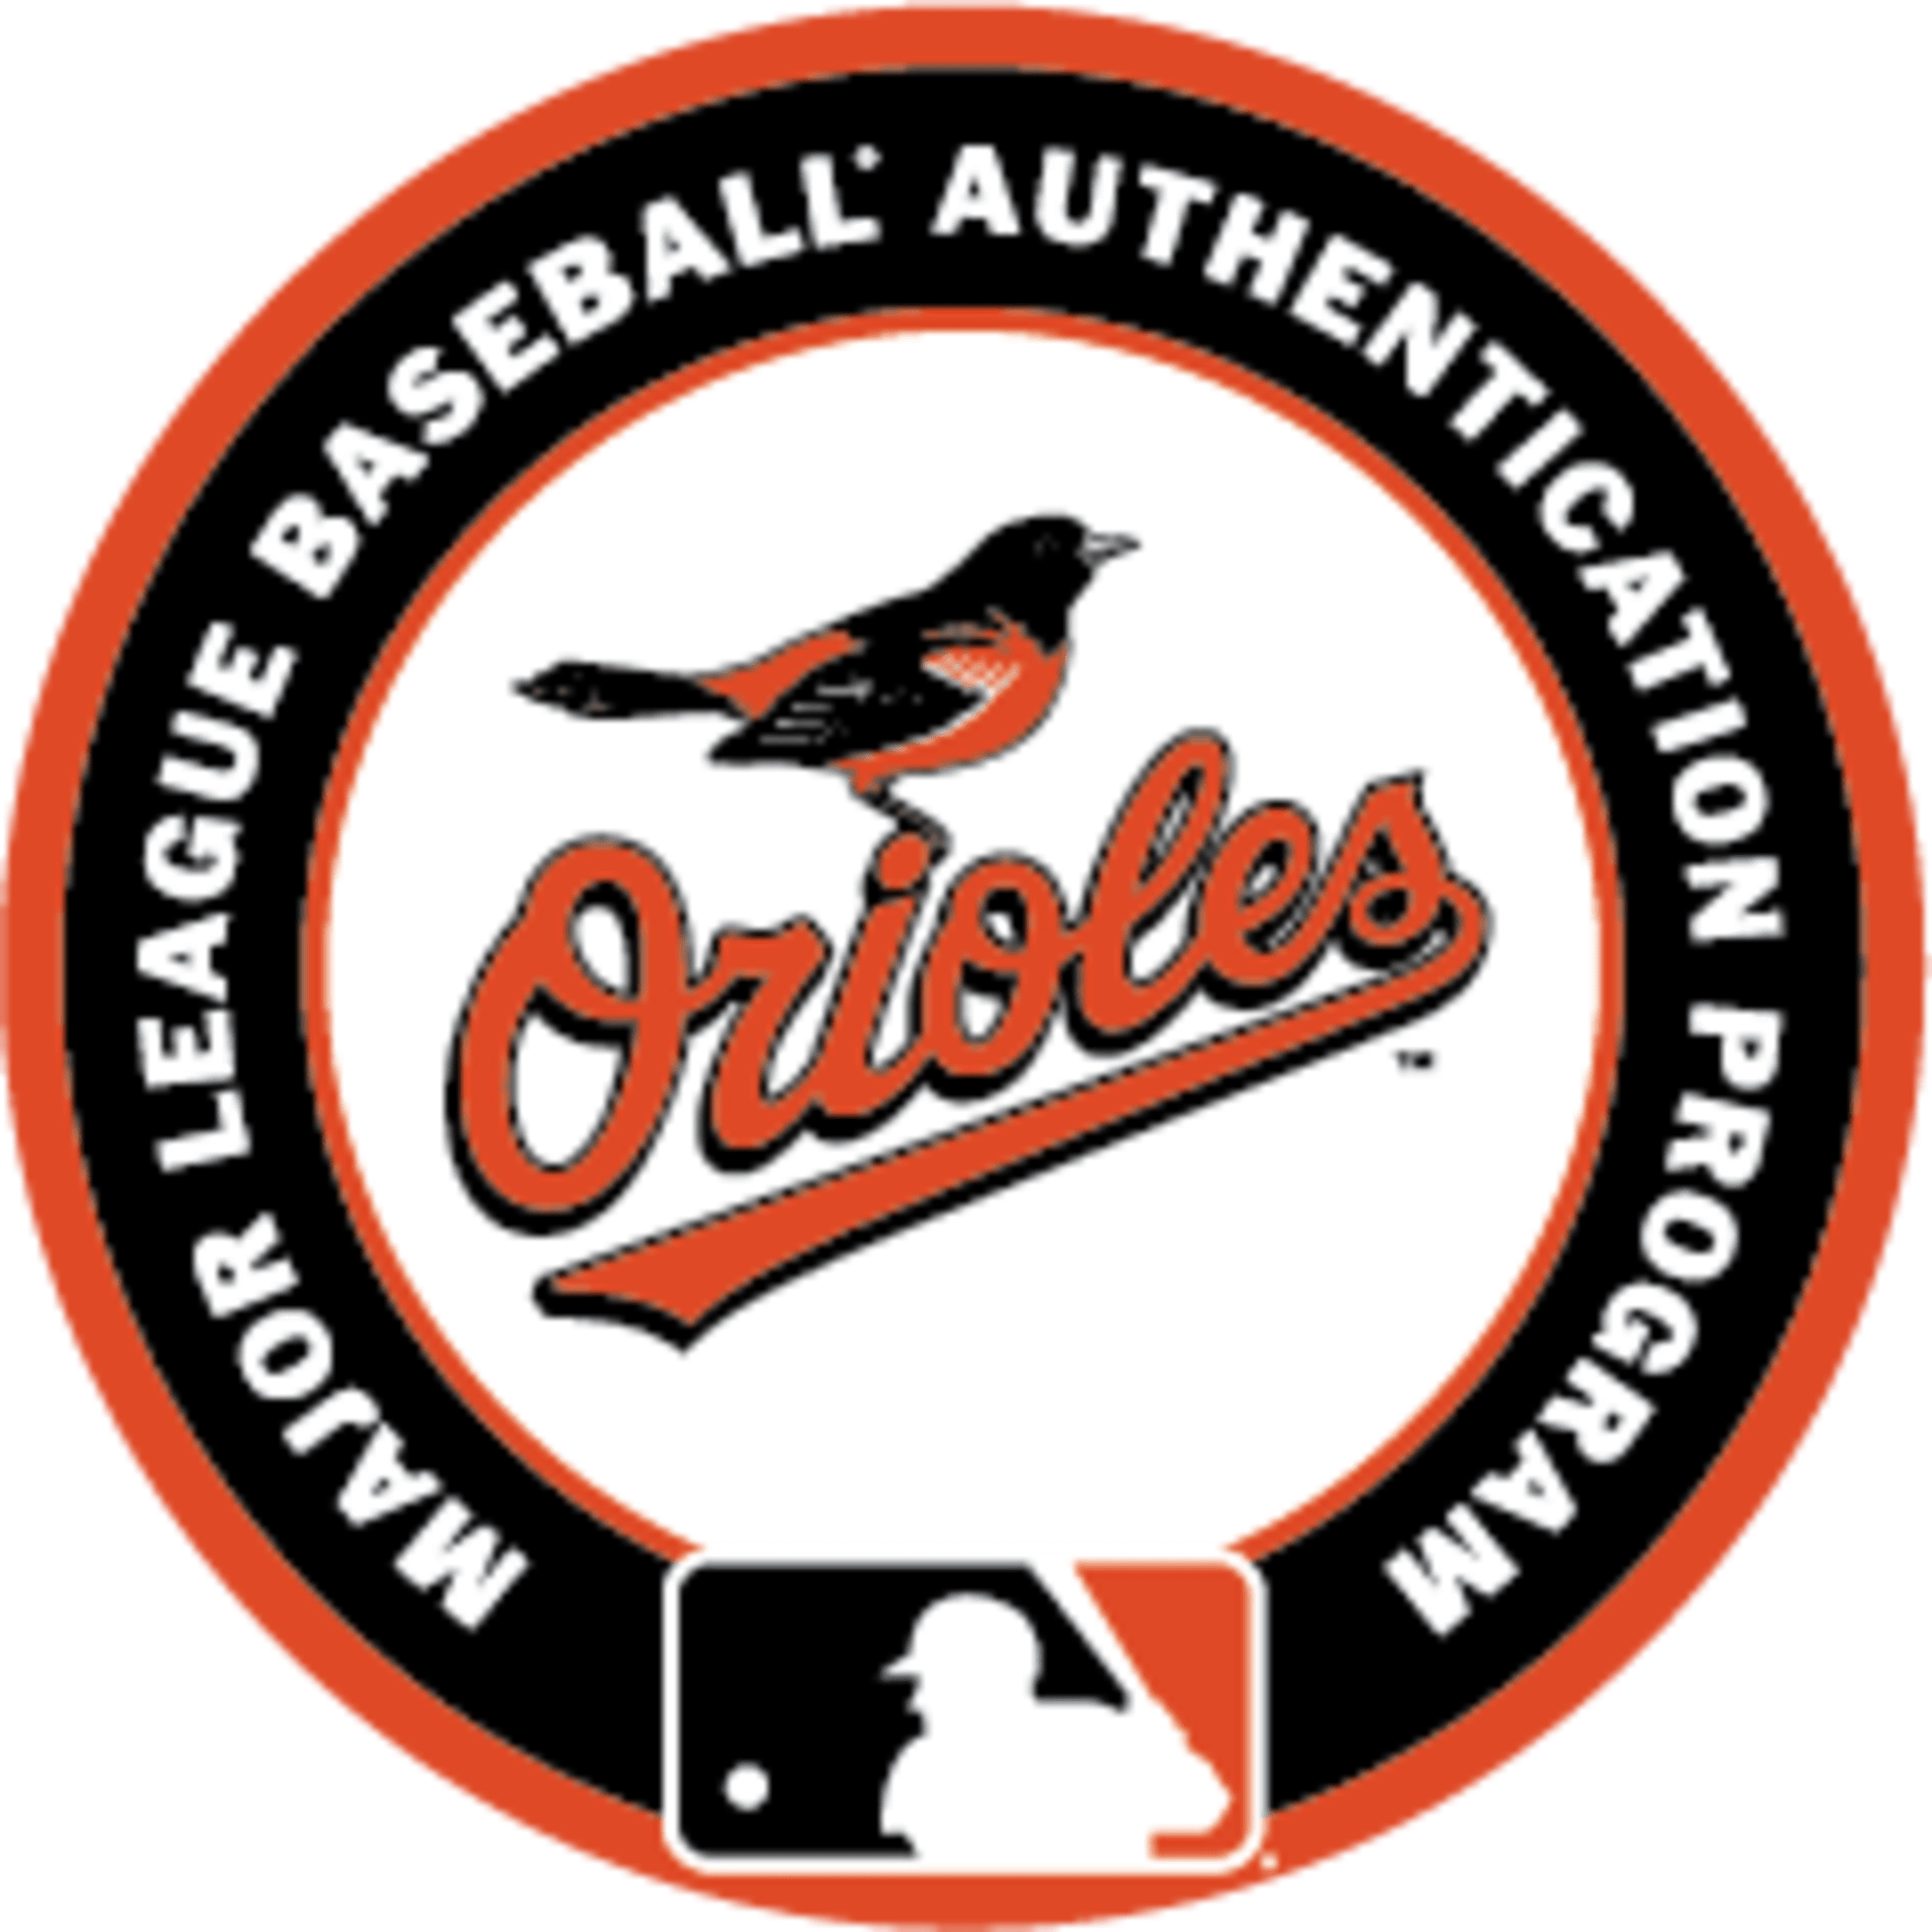 Hướng dẫn check hàng MLB Real Fake bằng Hidden Tag chi tiết